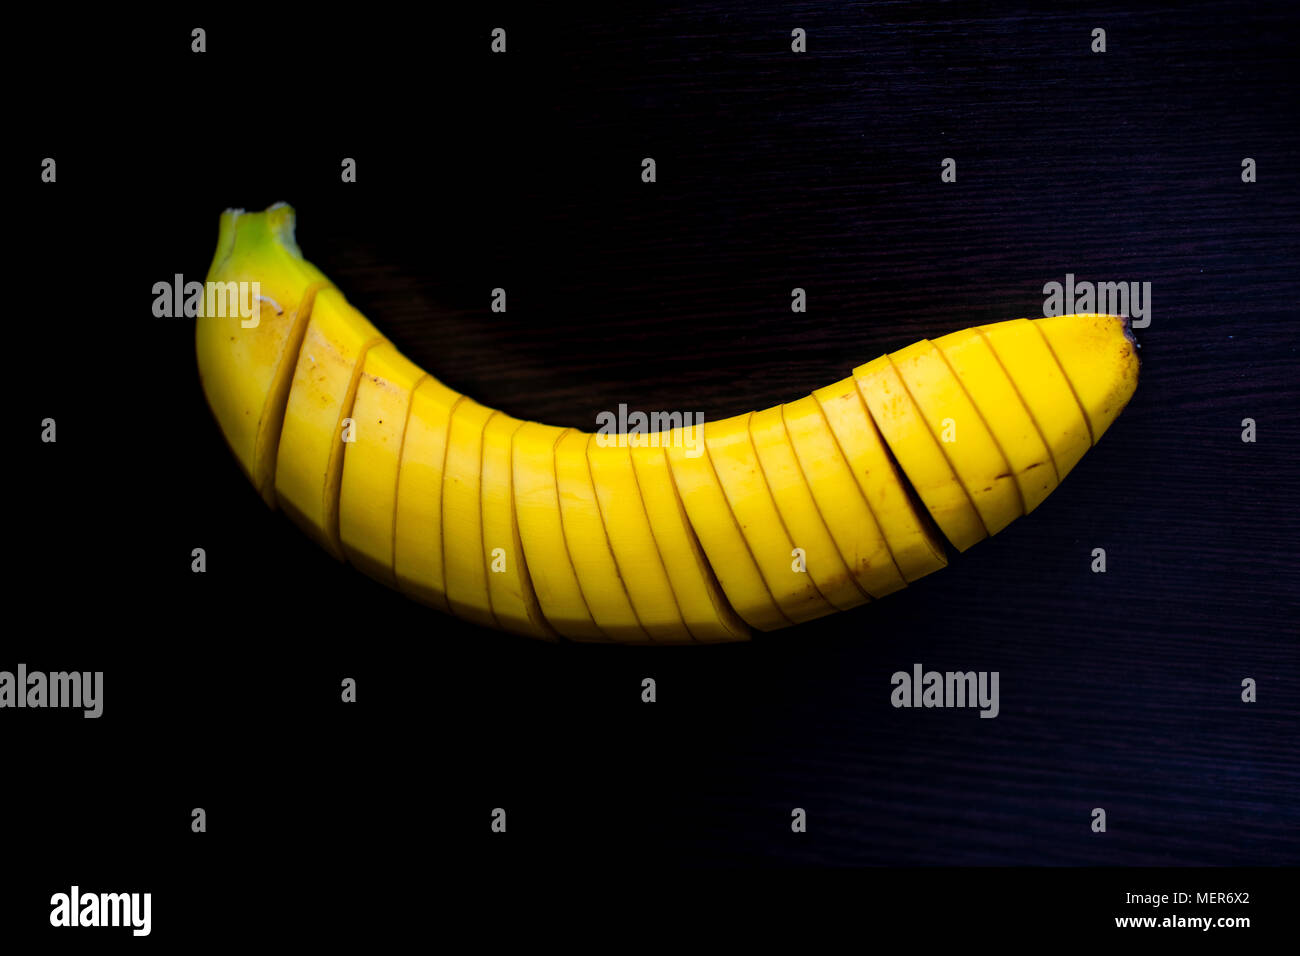 Low Key Schuss eine Banane in Stücke geschnitten Stockfoto